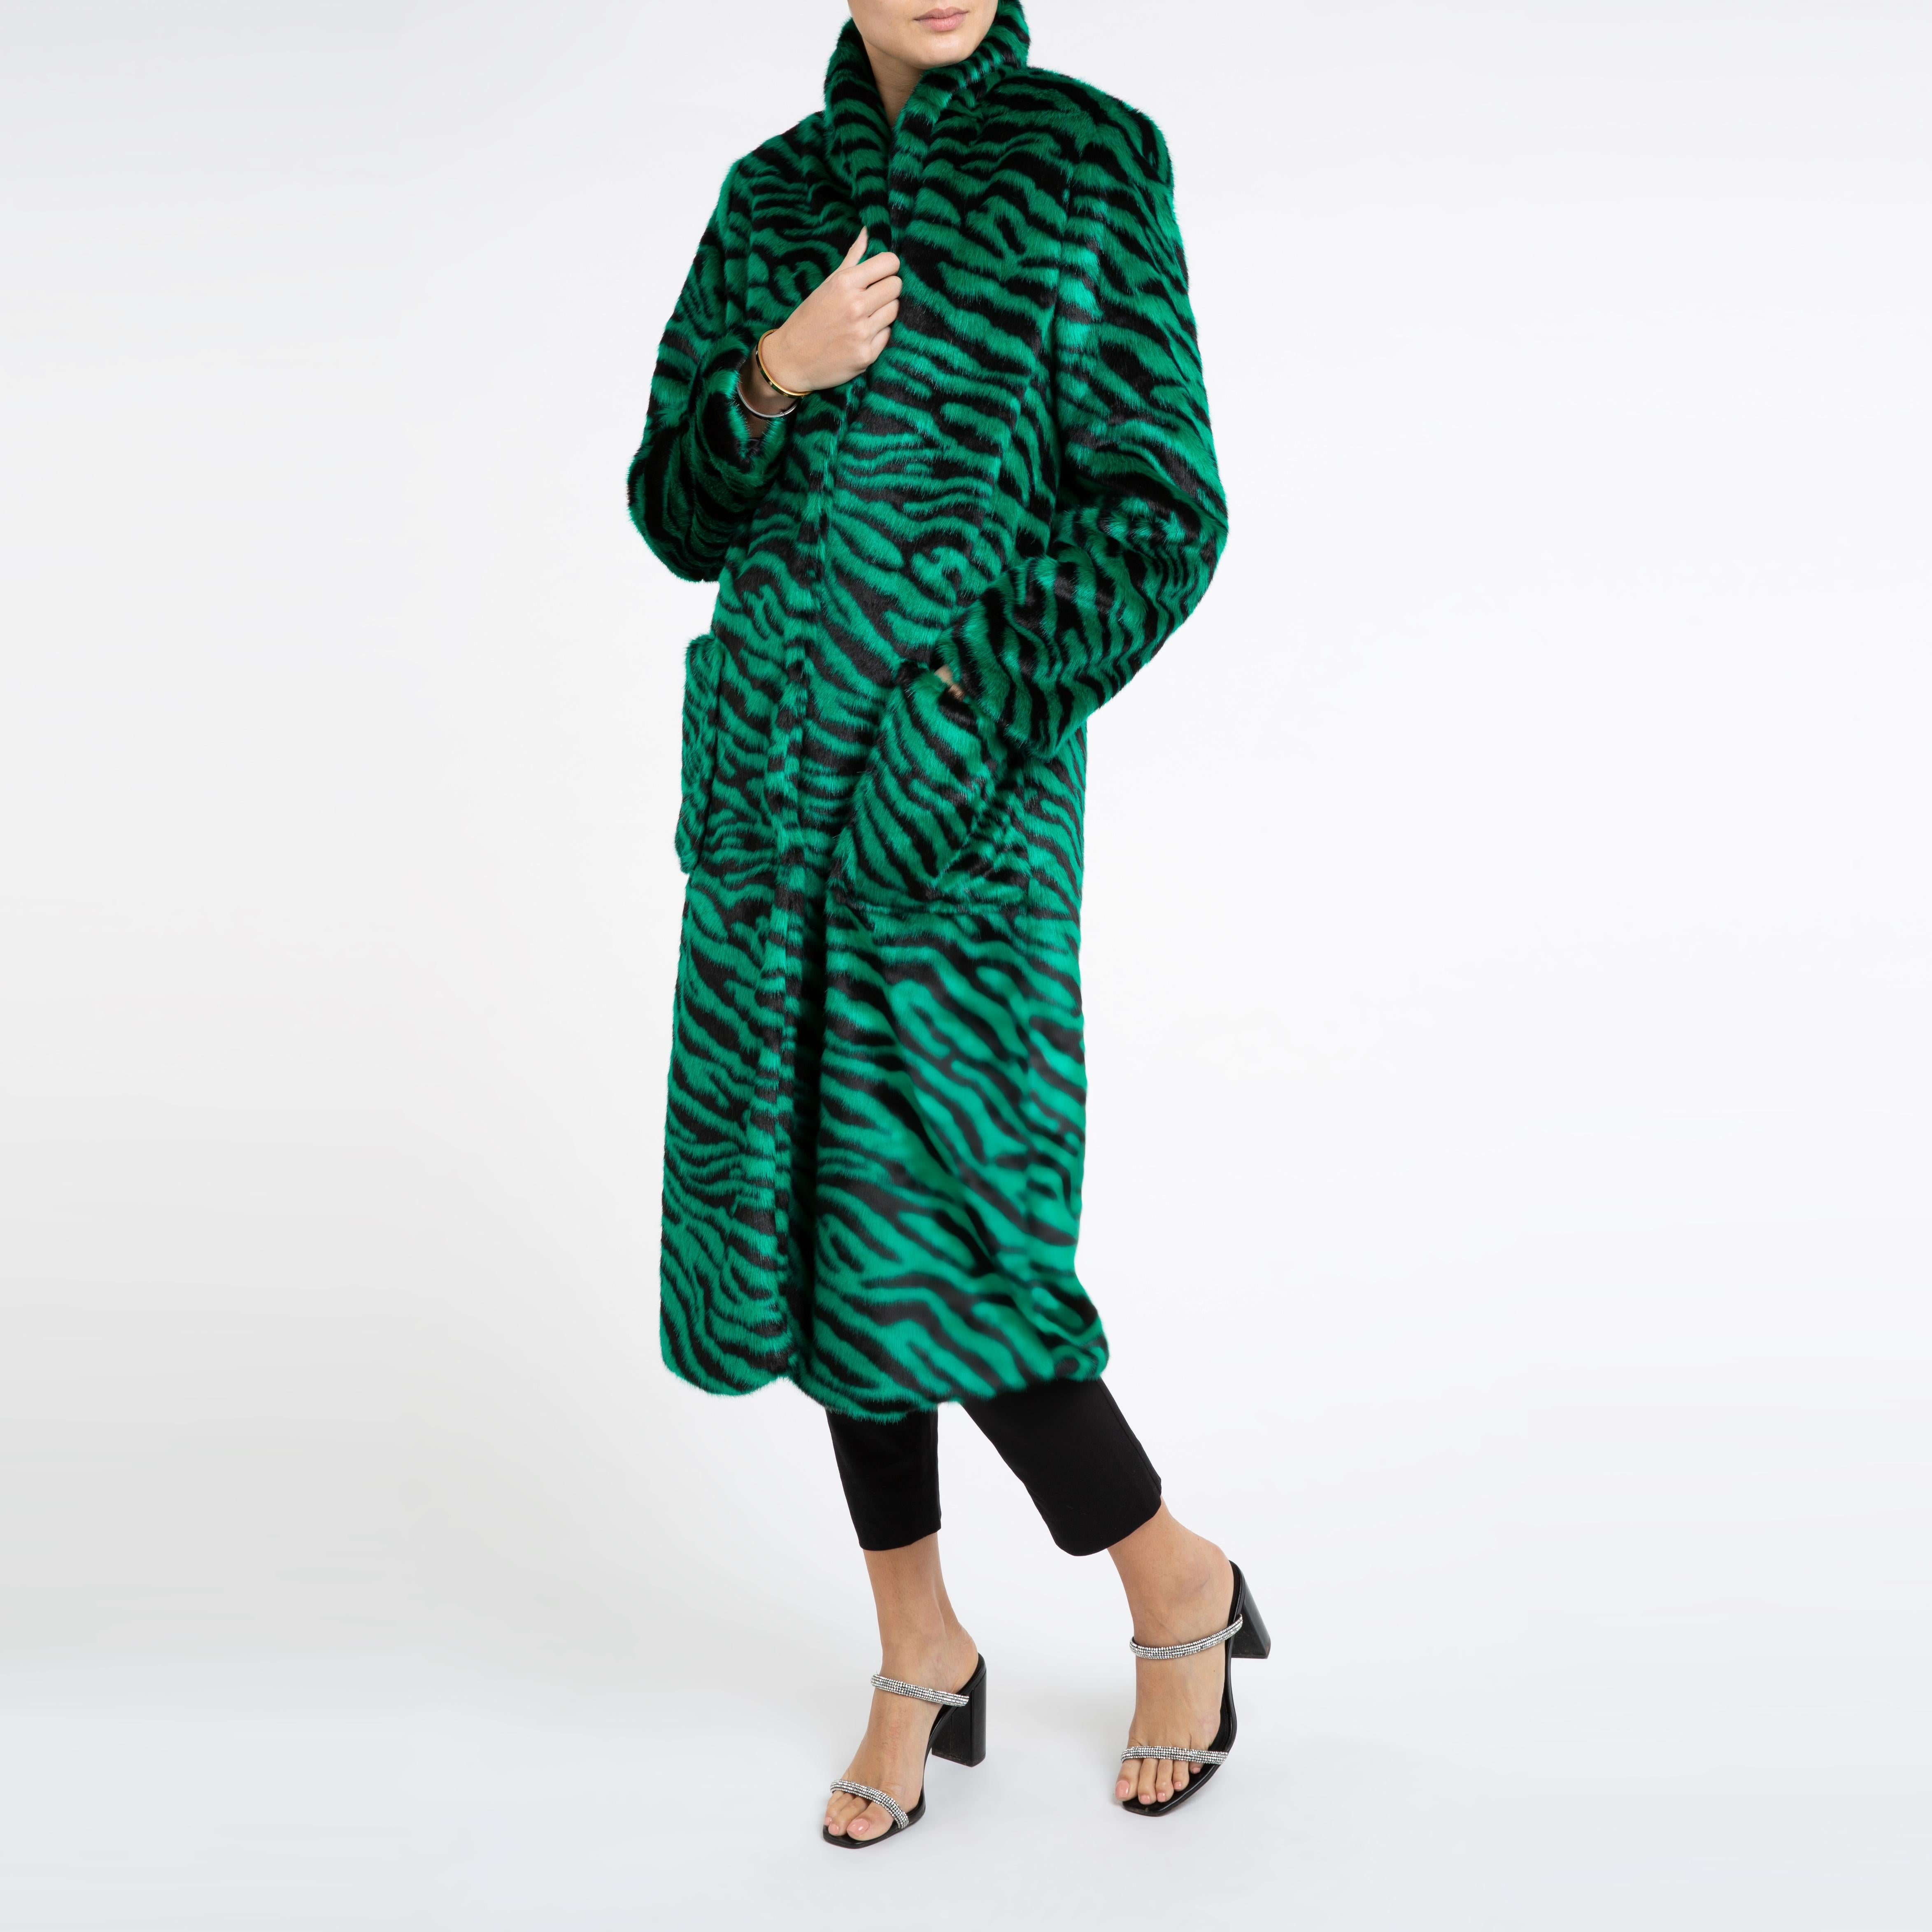 Verheyen London Esmeralda Faux Fur Coat in Emerald Green Zebra Print size uk 8 For Sale 1